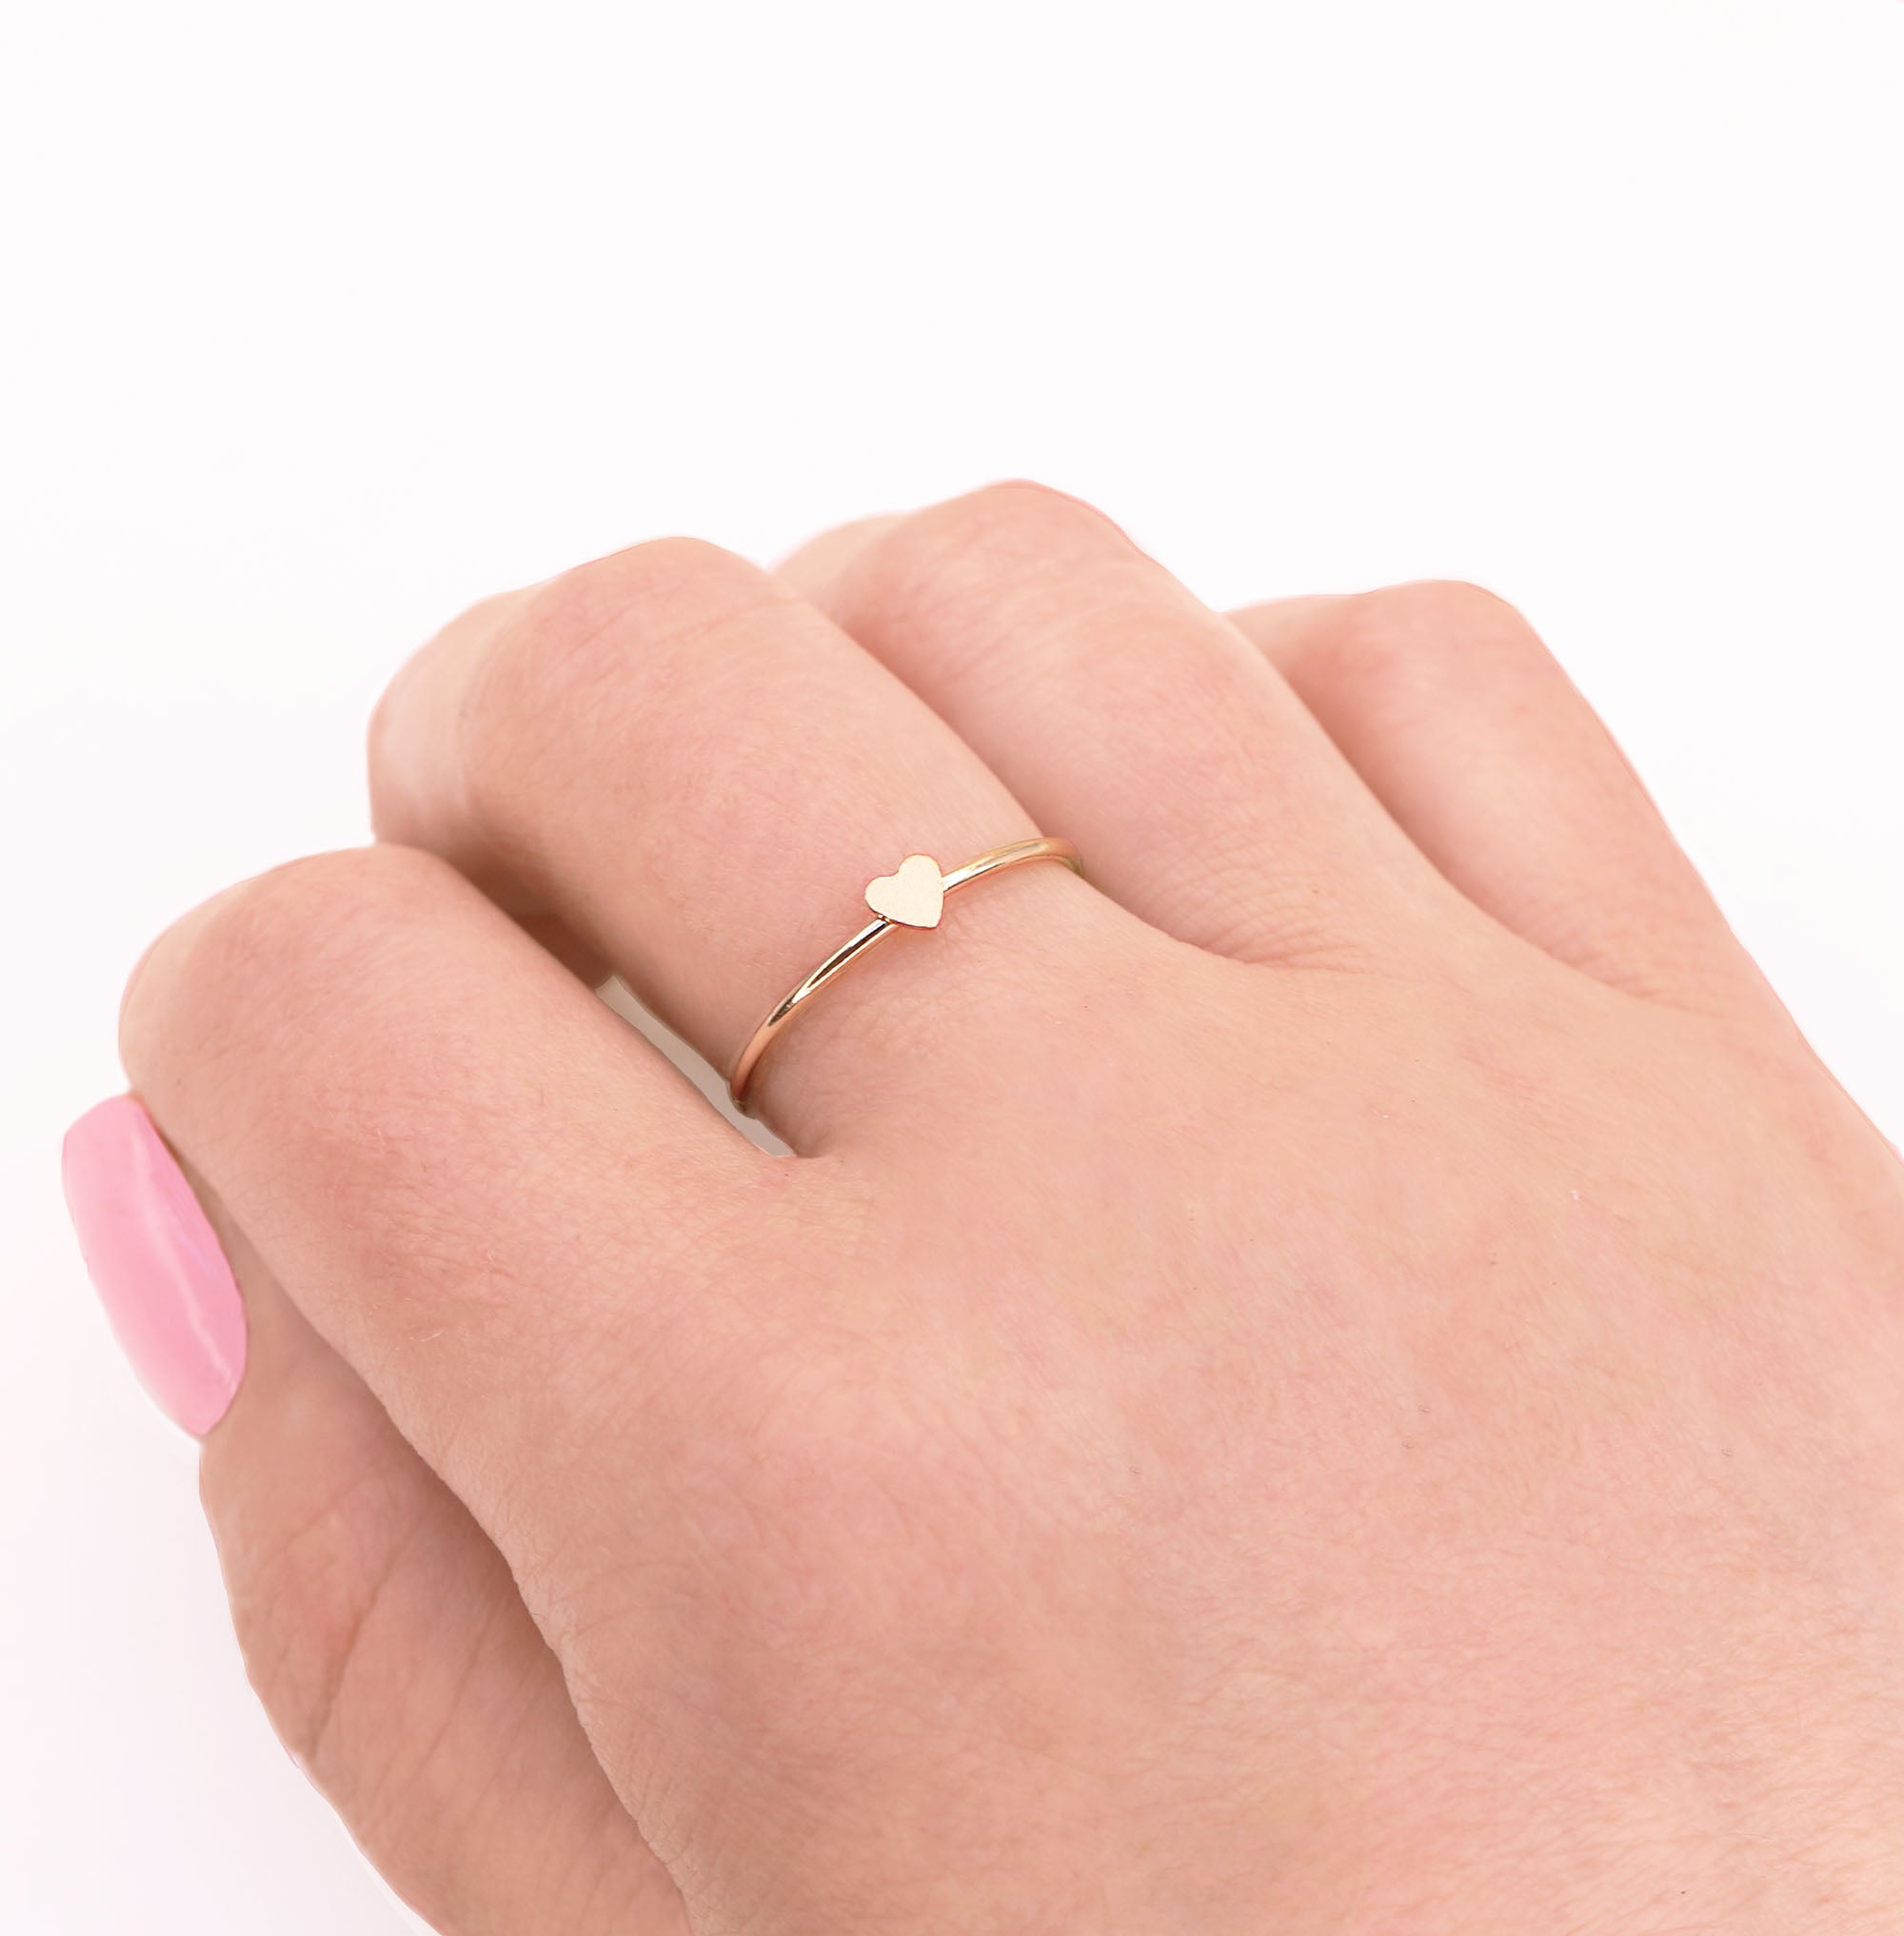 Tiny Gold Heart Ring